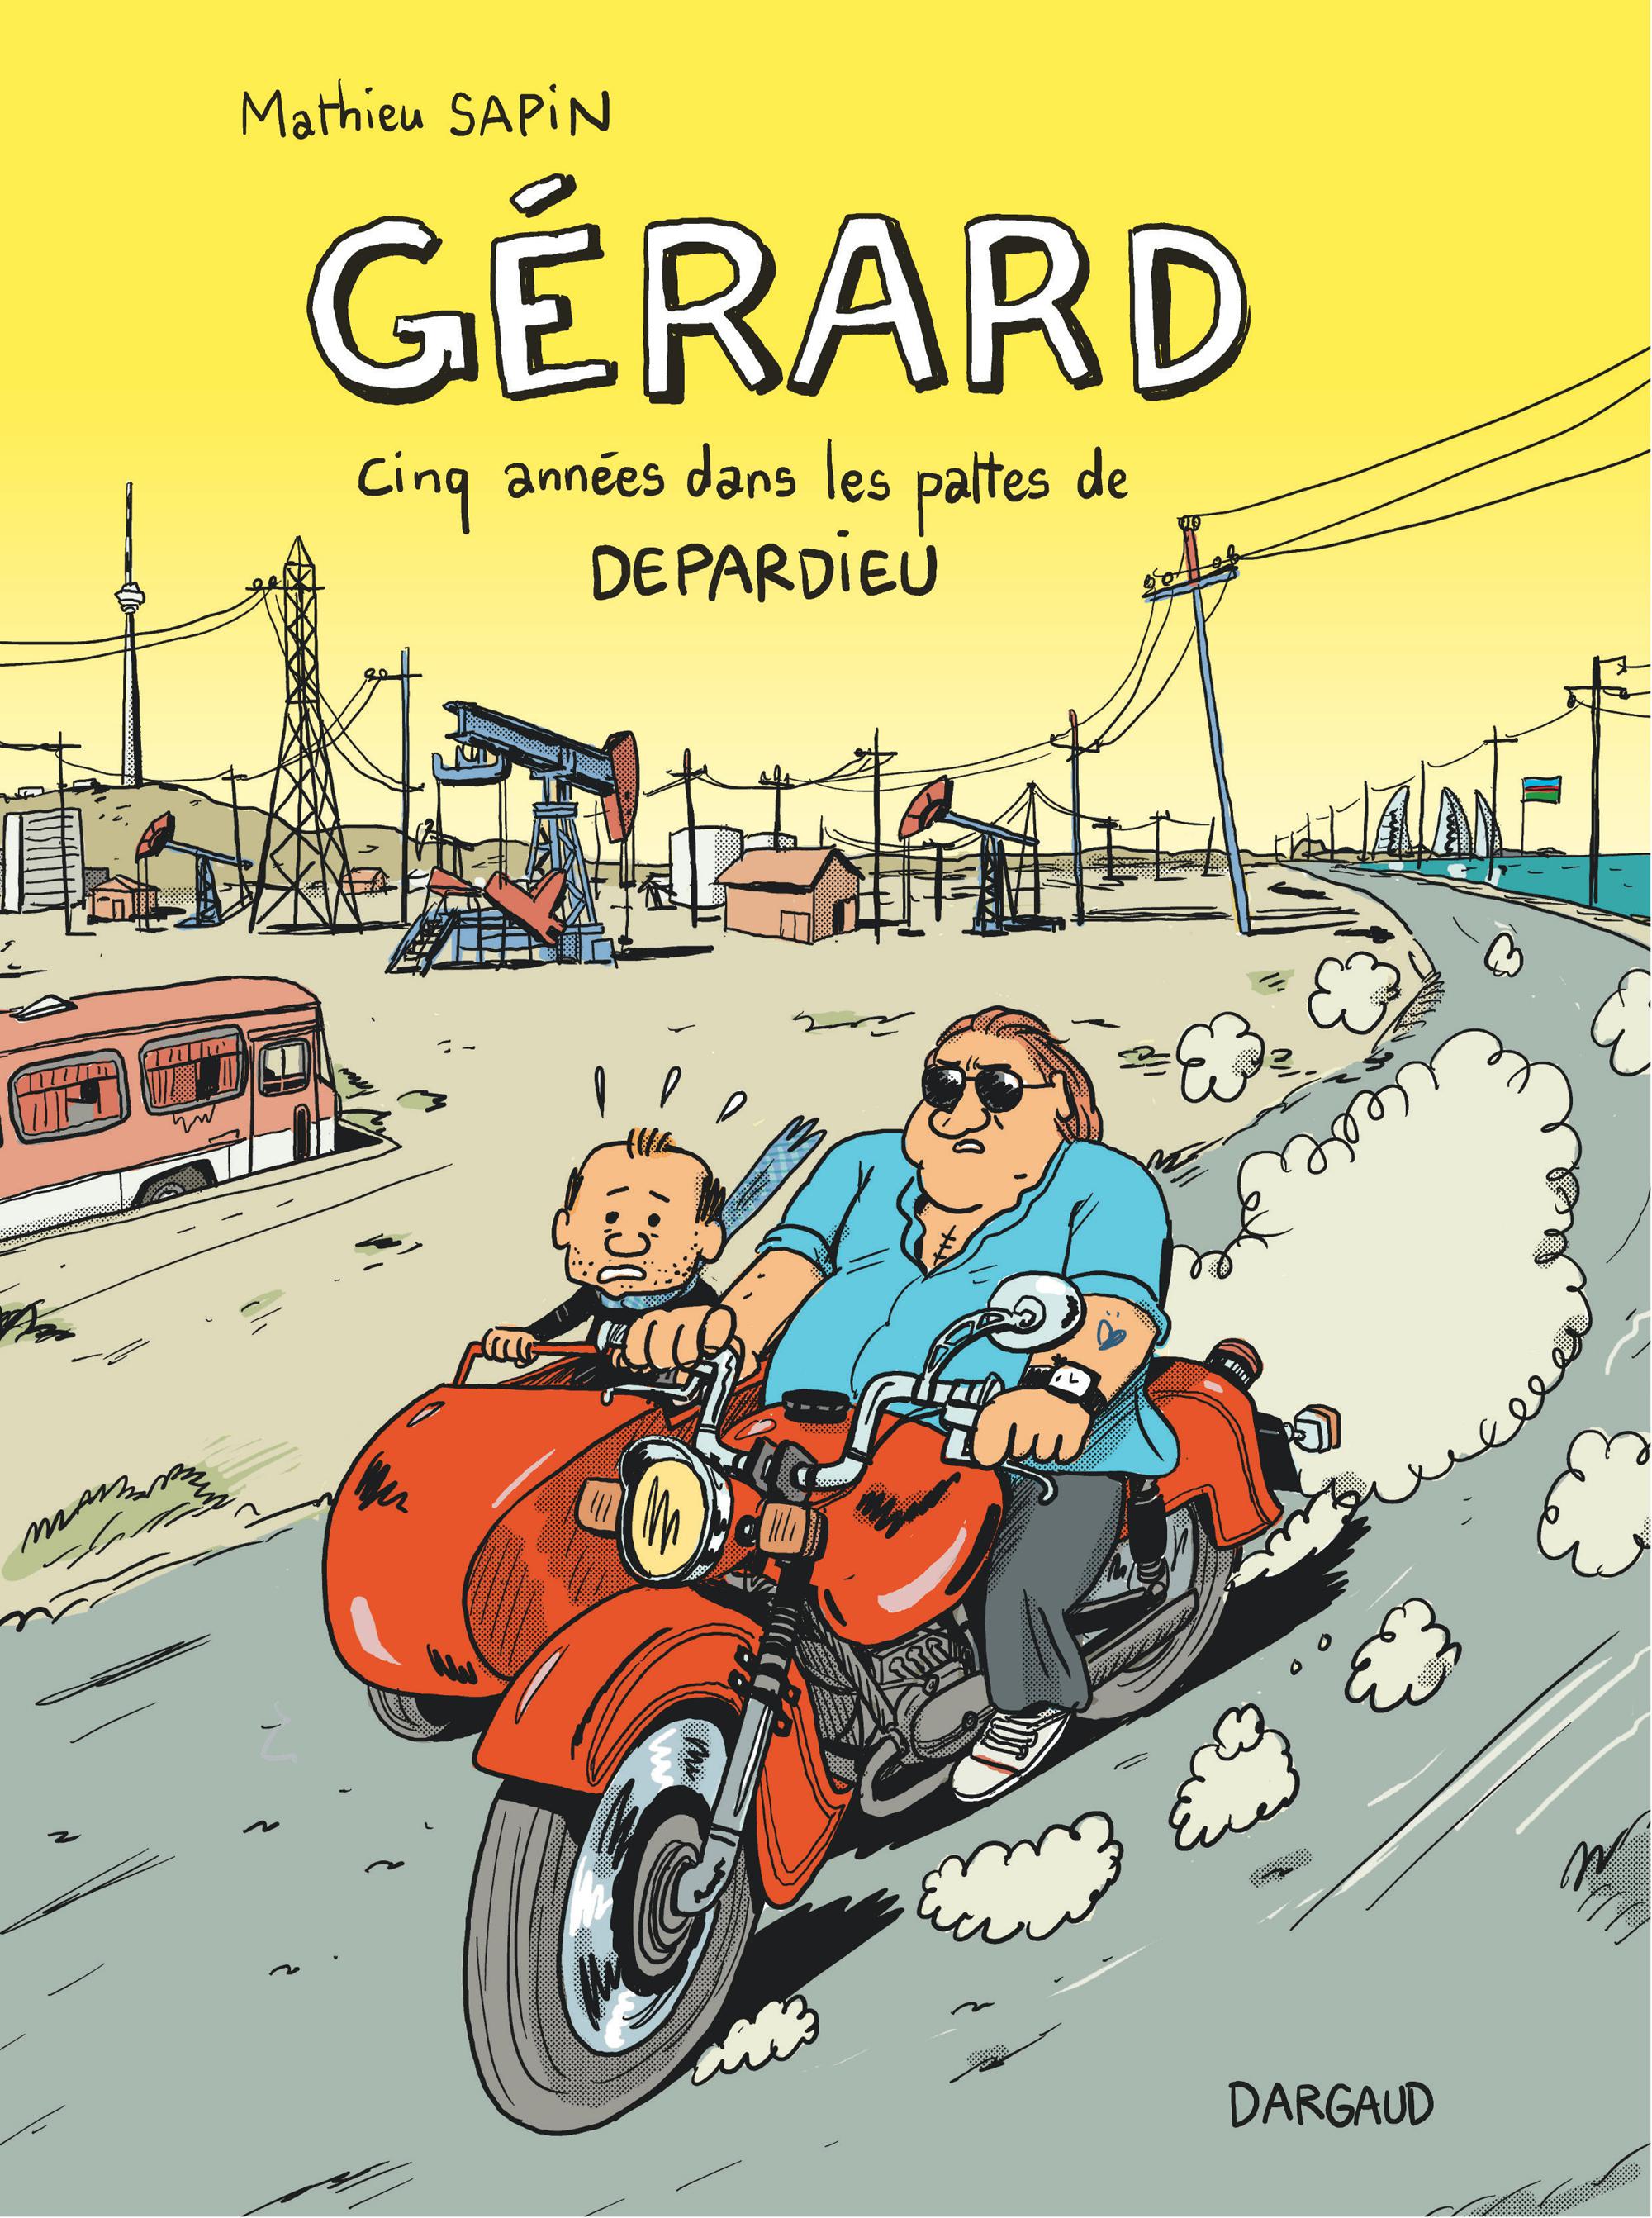 La couverture de "Gérard, cinq années dans les pattes de Depardieu", de Mathieu Sapin, chez Dargaud.Dargaud [Dargaud]